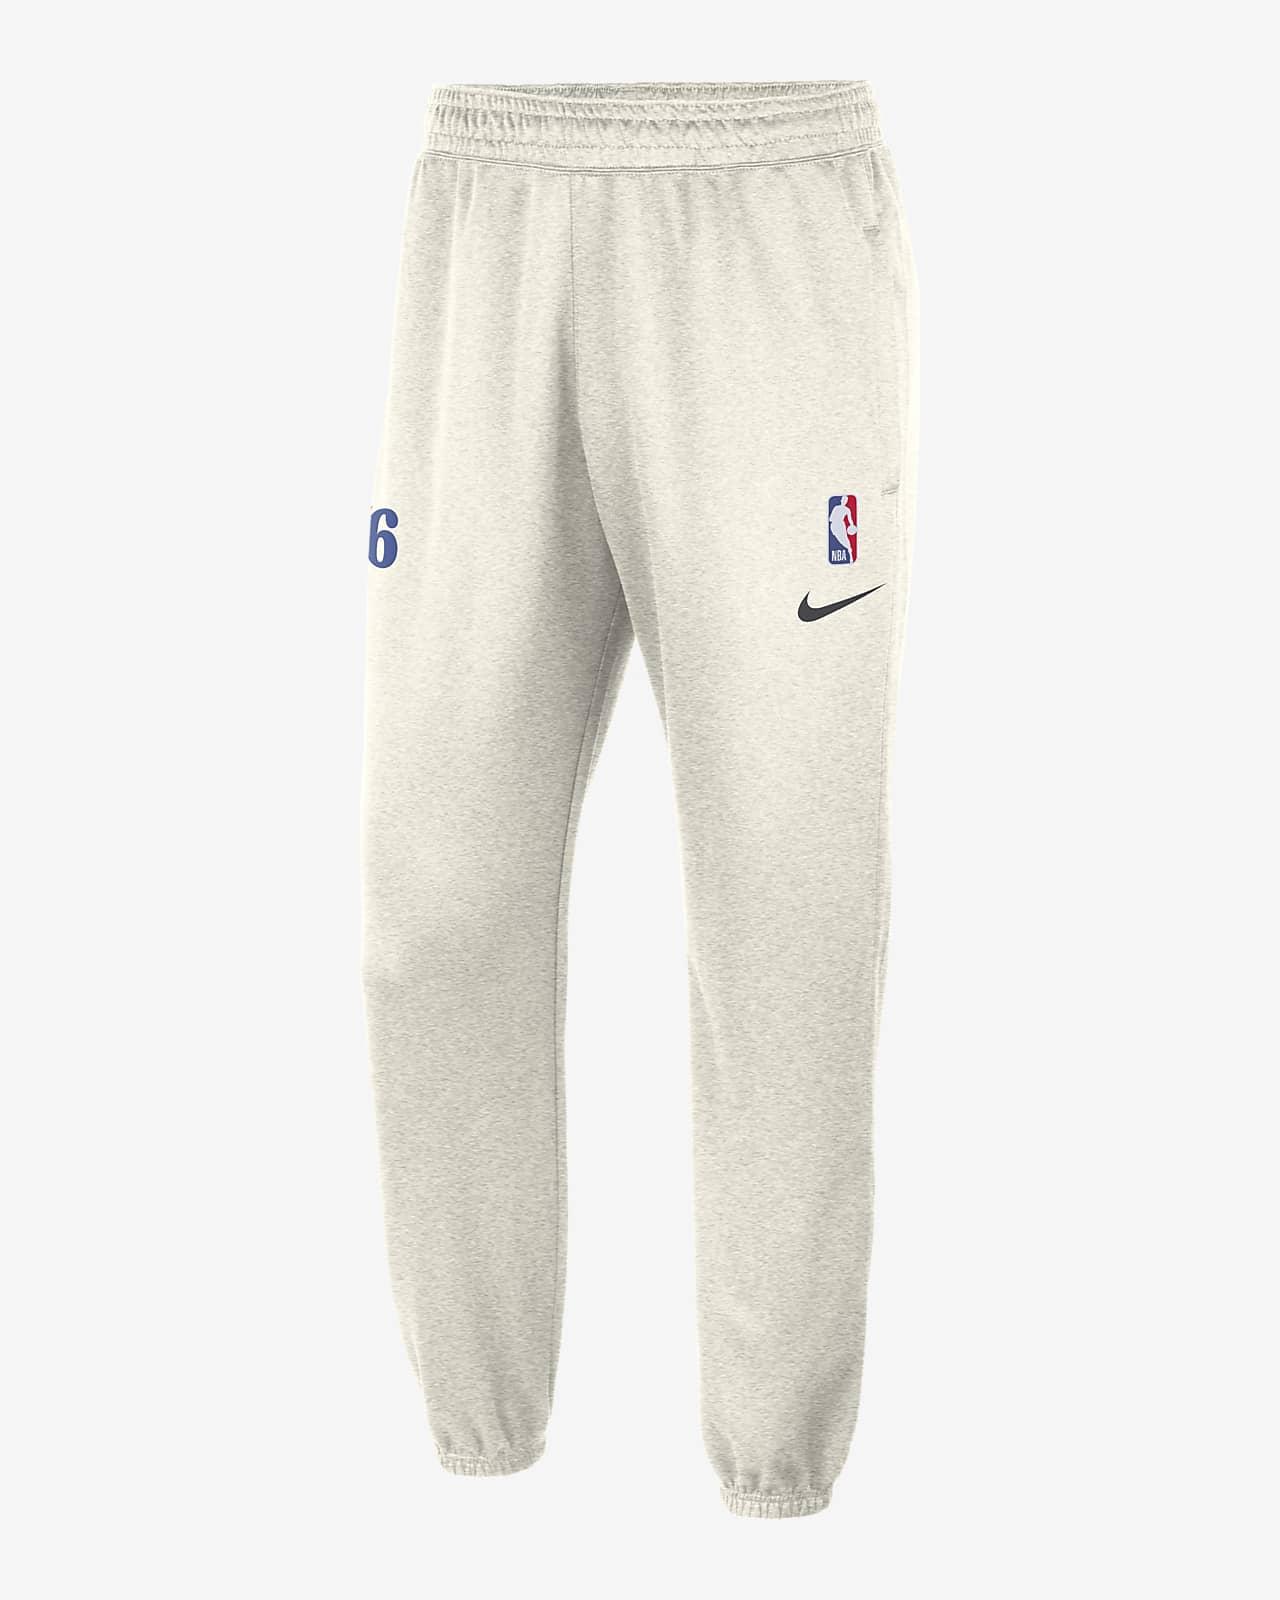 Philadelphia 76ers Spotlight Men's Nike Dri-FIT NBA Pants.